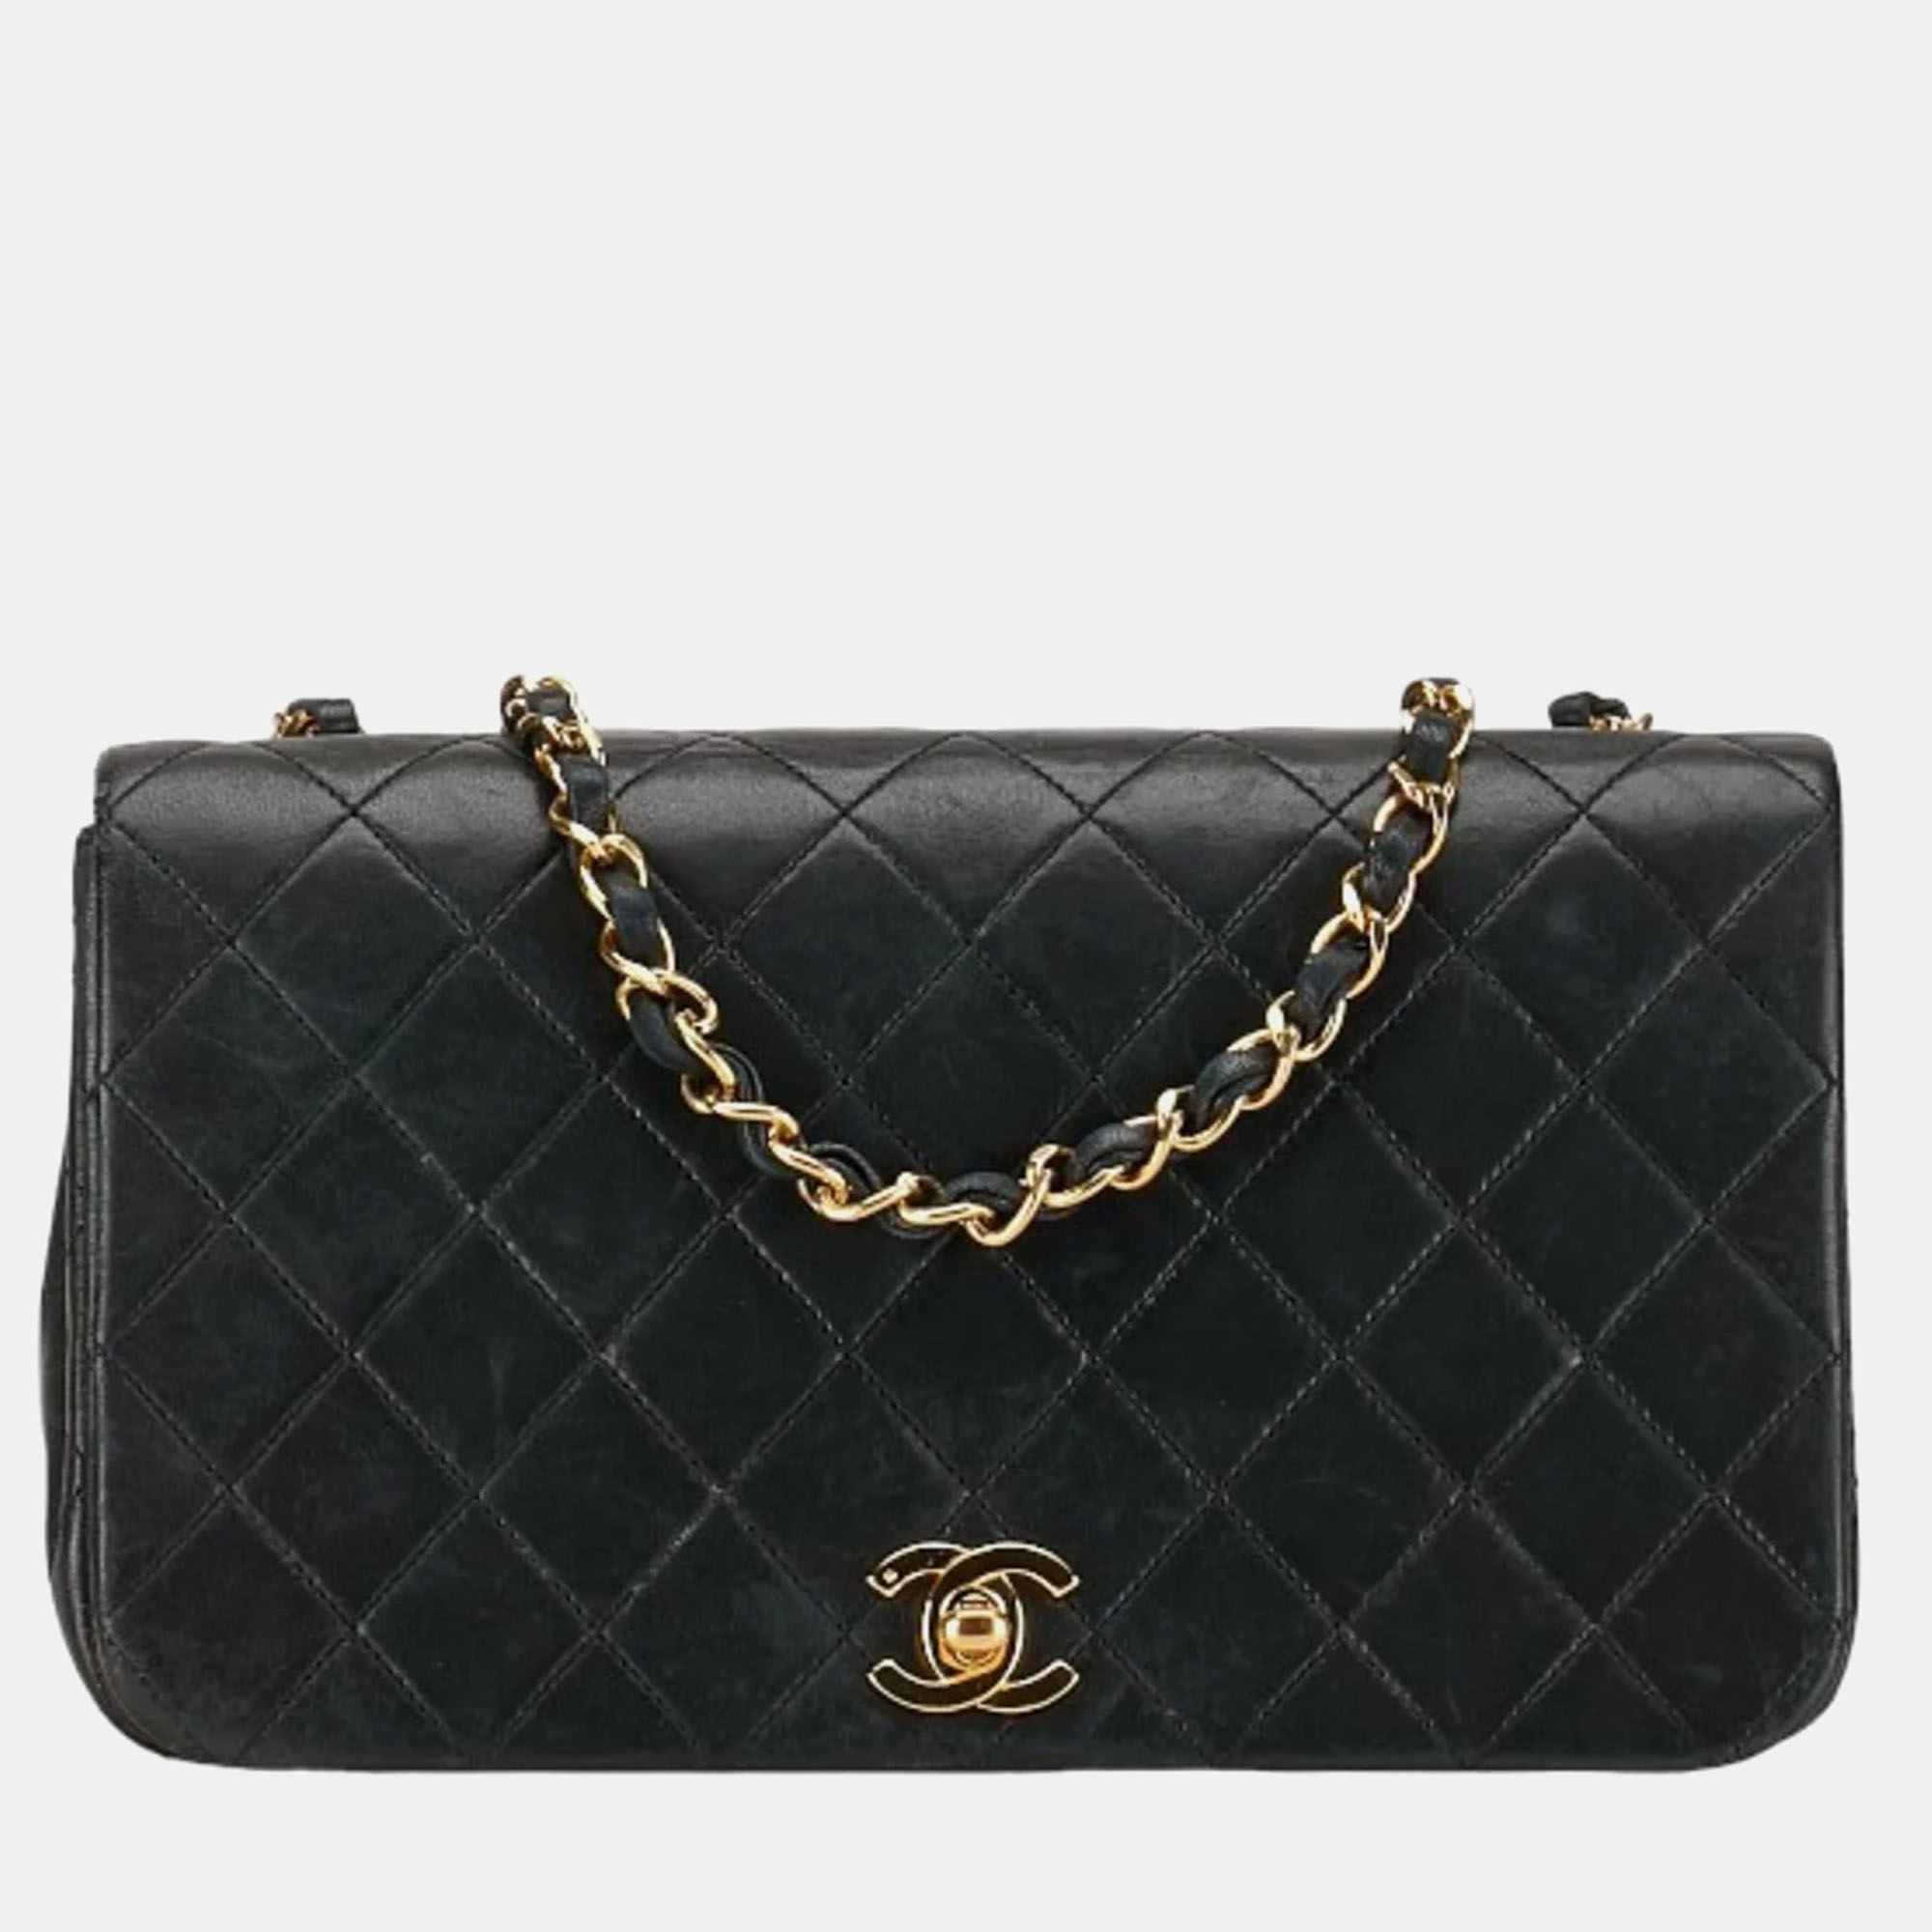 Chanel black leather full flap shoulder bag